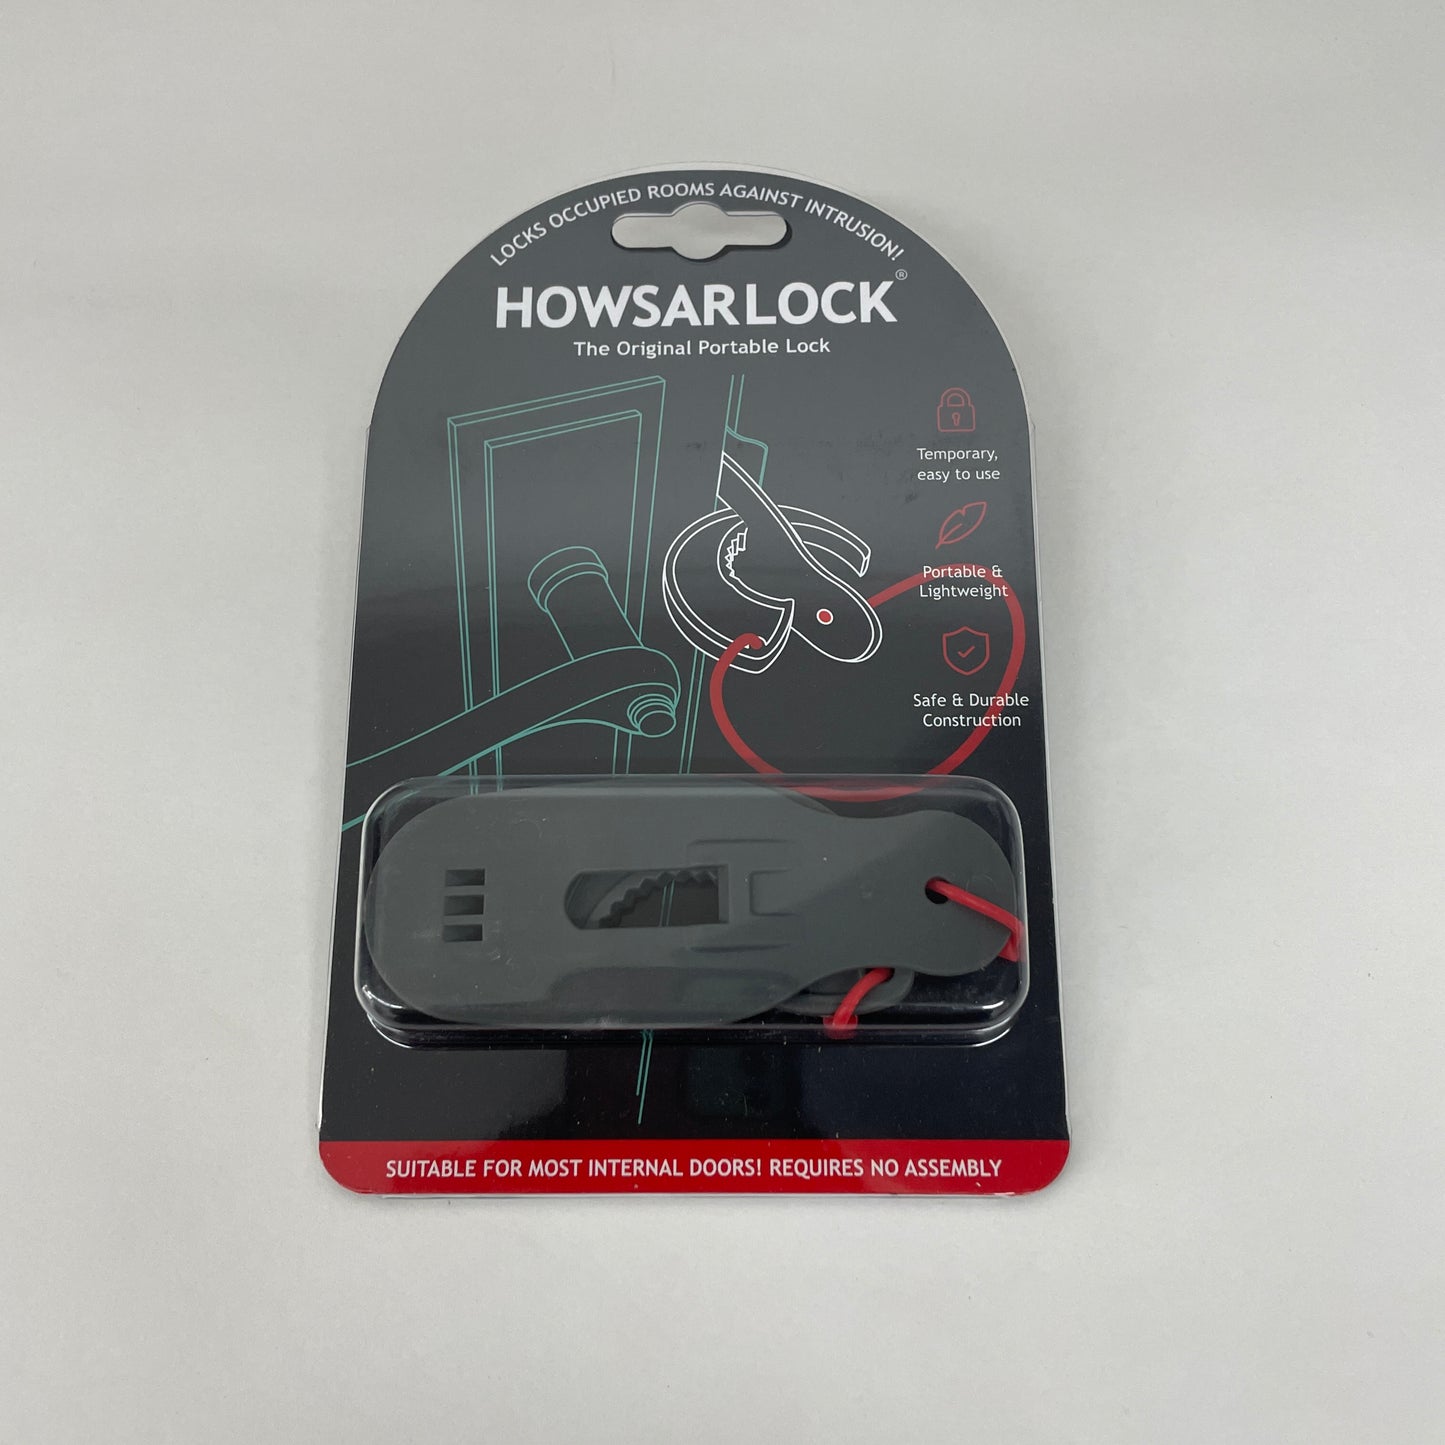 HOWSARLOCK PORTABLE TRAVEL DOOR LOCK